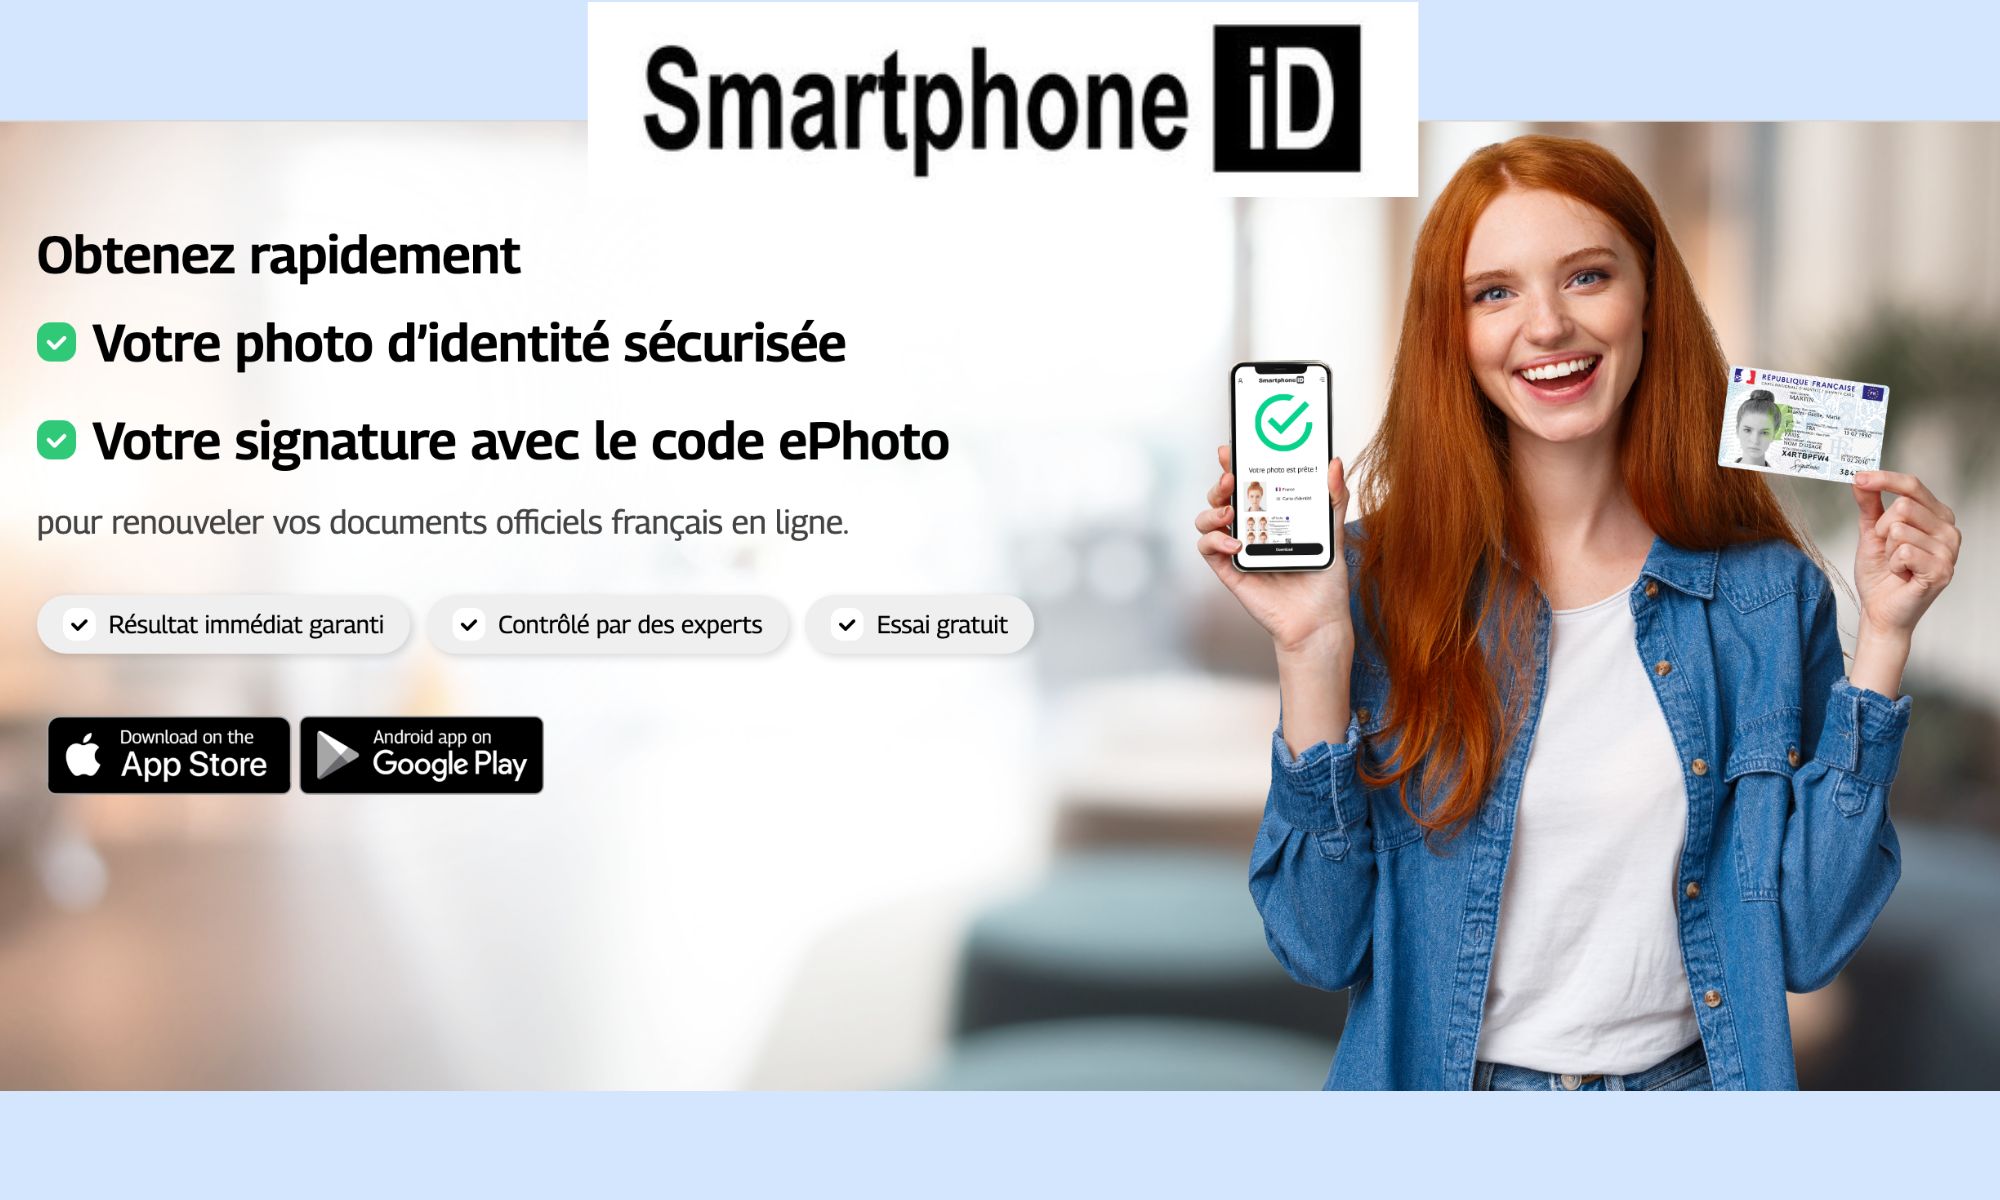 Smartphone ID : obtenir des photos d’identité sécurisées et aux normes avec un smartphone